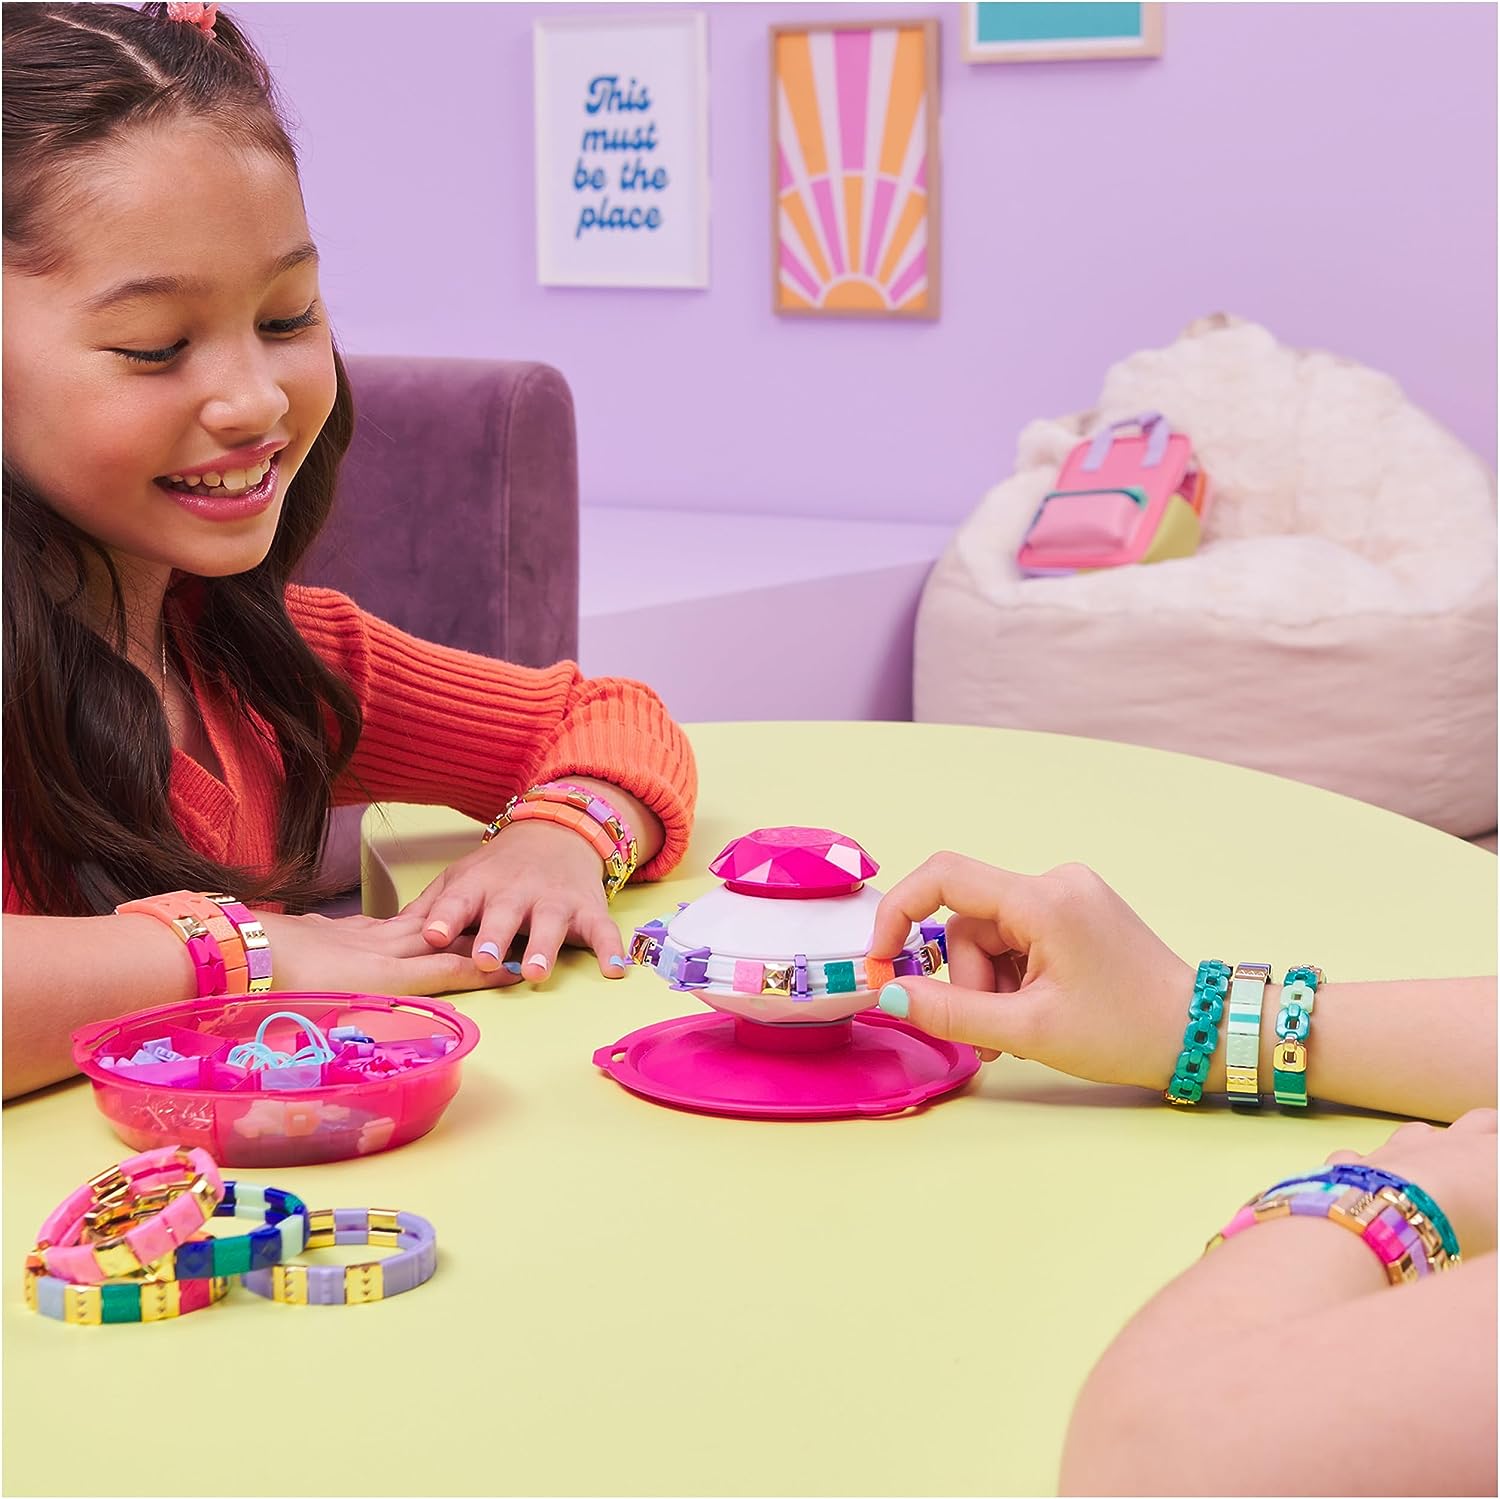 Cool Maker PopStyle Bracelet Maker Expansion Pack, 50+ Gem Beads, 3  Friendship Bracelets, Bracelet Making Kit, DIY Arts and Crafts Kids Toys  for Girls